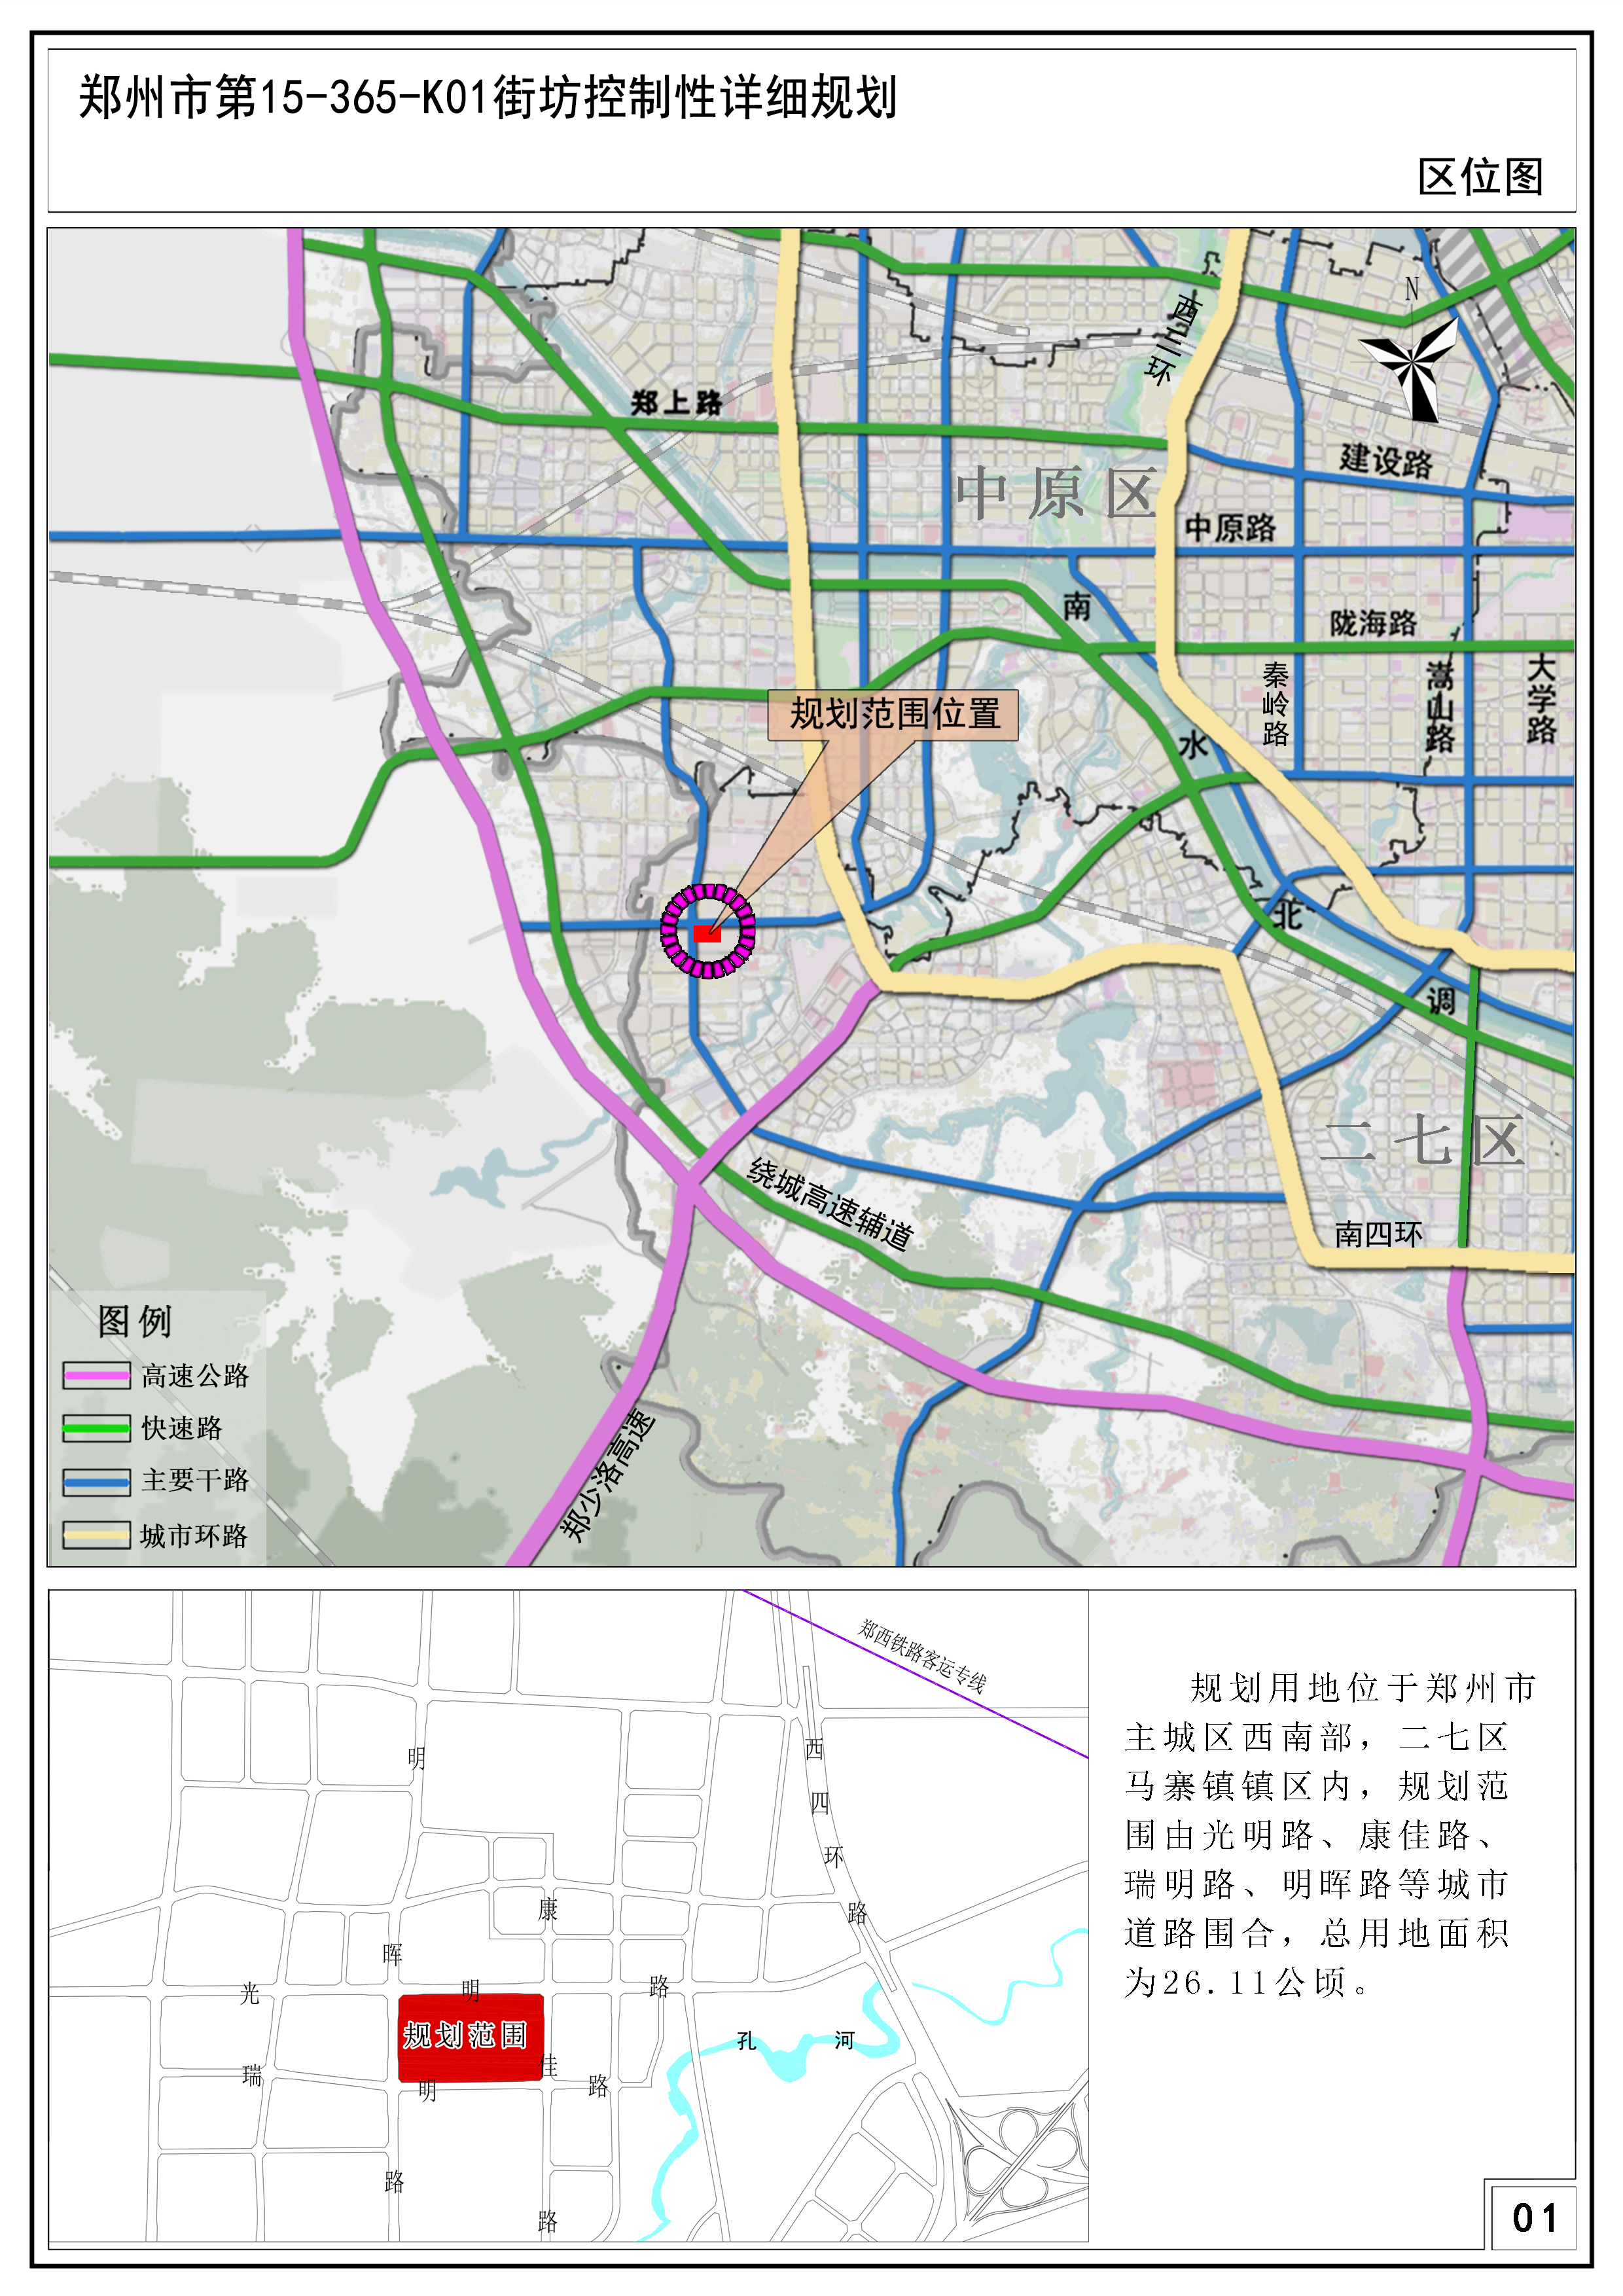 郑州市第15-365-K01街坊控制性详细规划